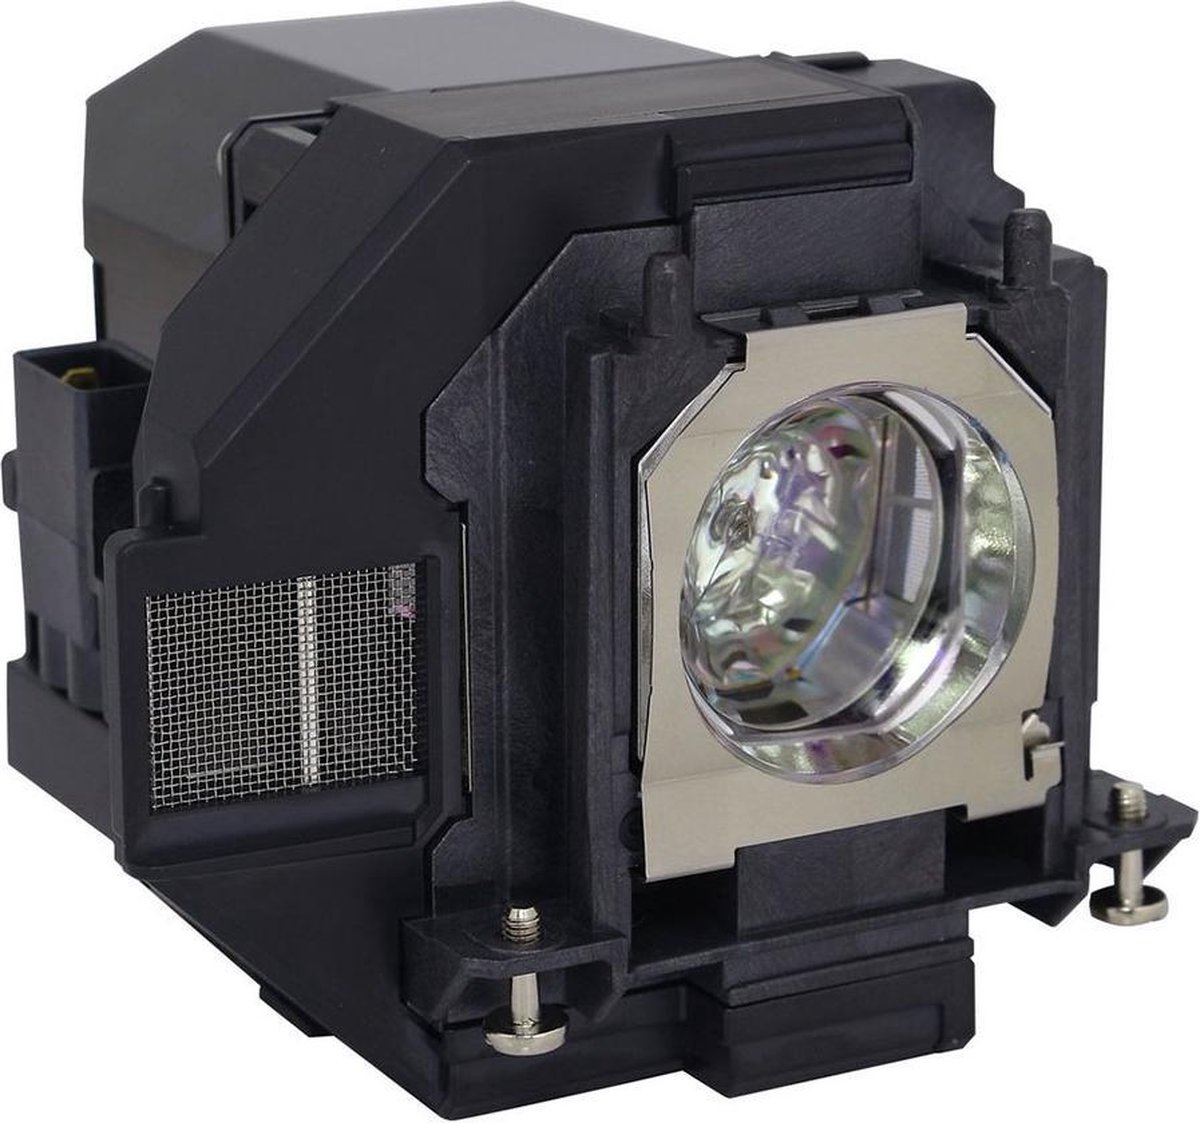 Beamerlamp geschikt voor de EPSON EH-TW5400 beamer, lamp code LP96 / V13H010L96. Bevat originele UHP lamp, prestaties gelijk aan origineel.